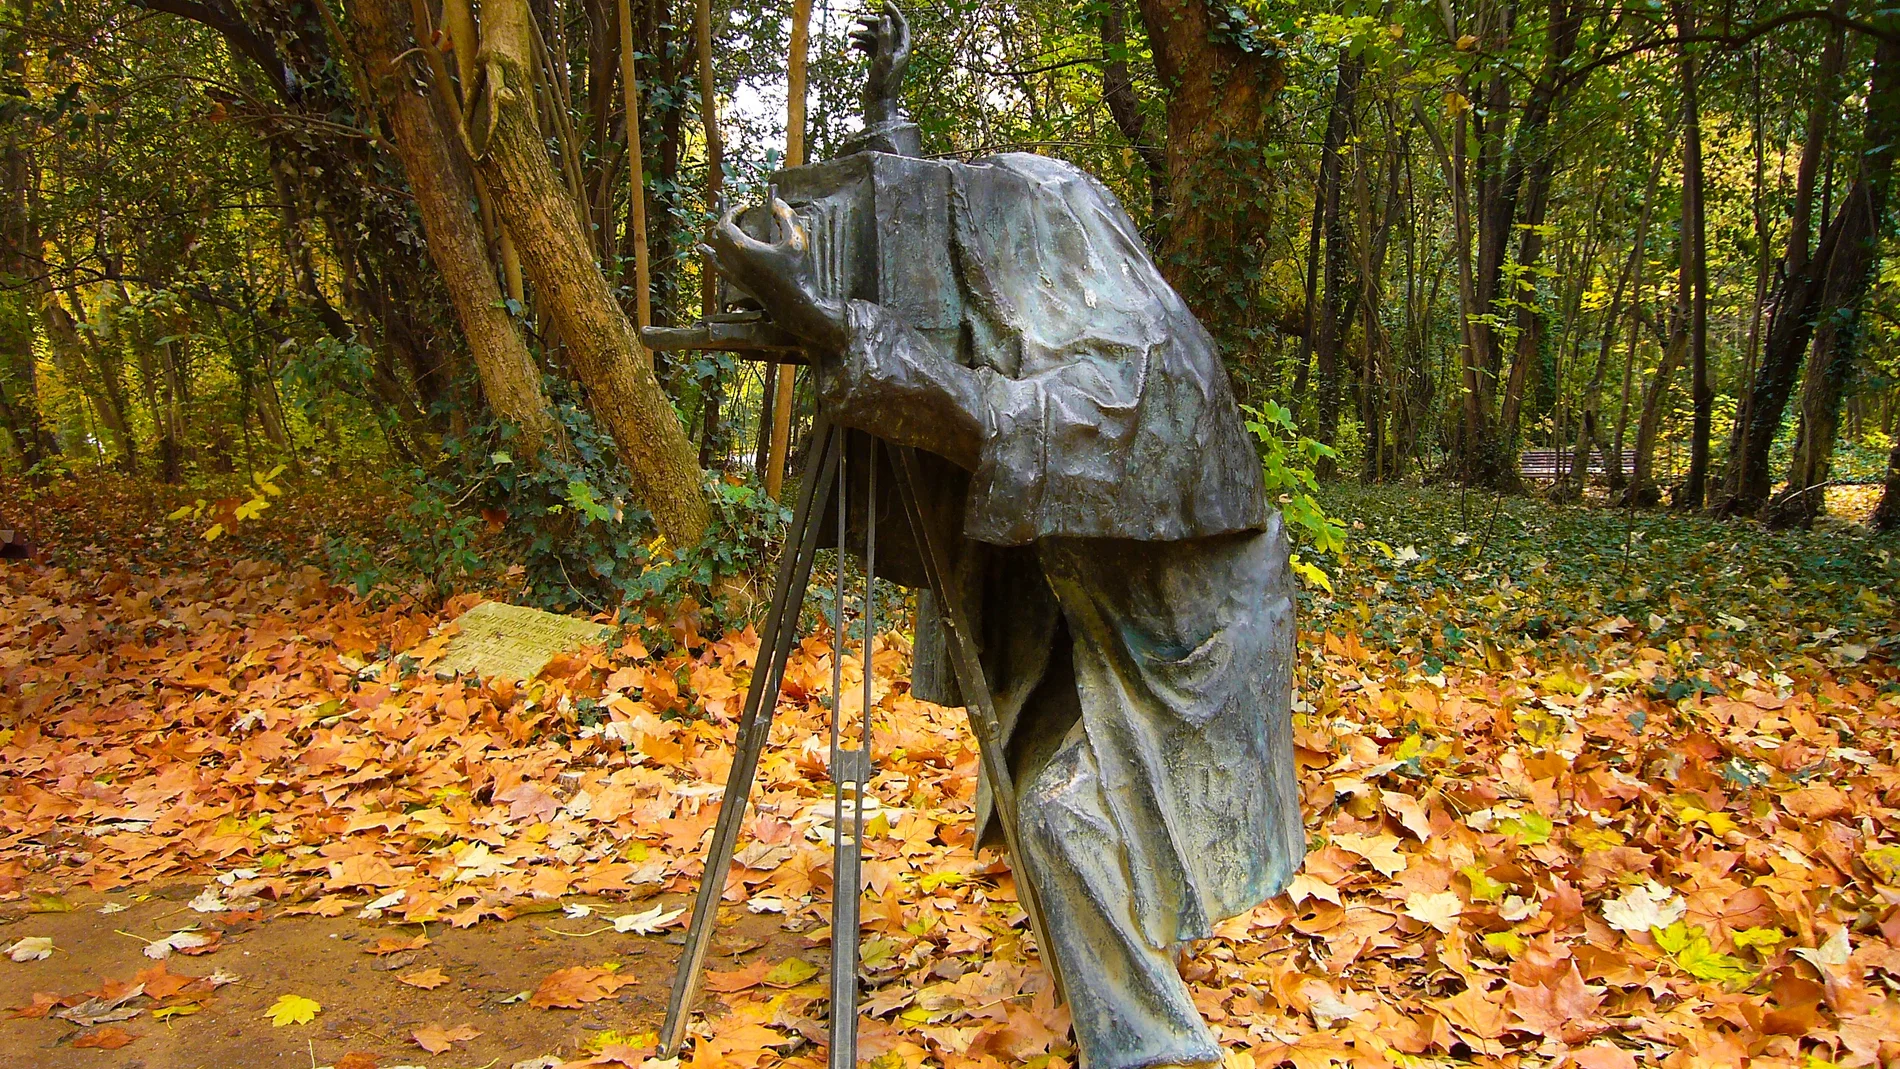 Estatua del Fotógrafo en el Campo Grande de Valladolid